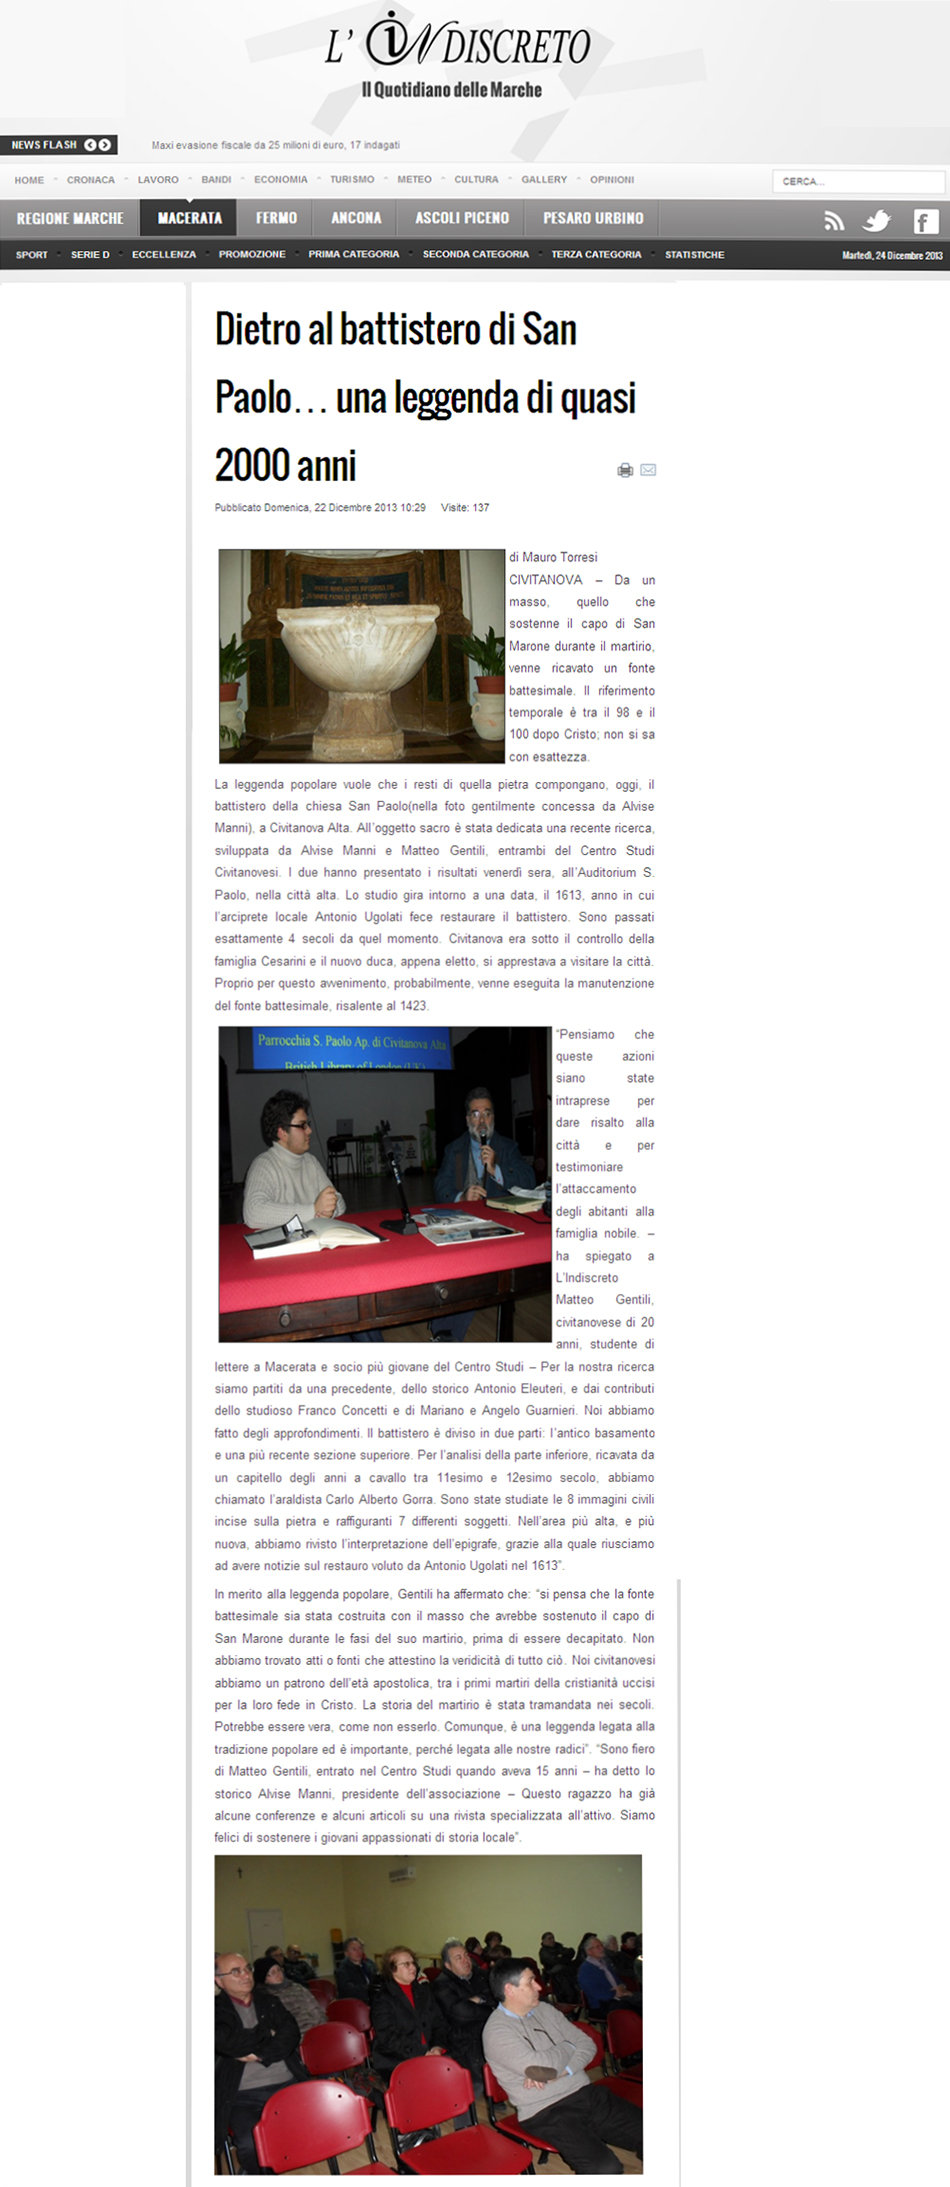 Articolo su L'Indiscreto del 22 dicembre 2013 sulla conferenza sul battistero della chiesa di San Paolo a Civitanova Alta tenuta da Alvise Manni e matteo Gentili del Centro Studi Civitanovesi